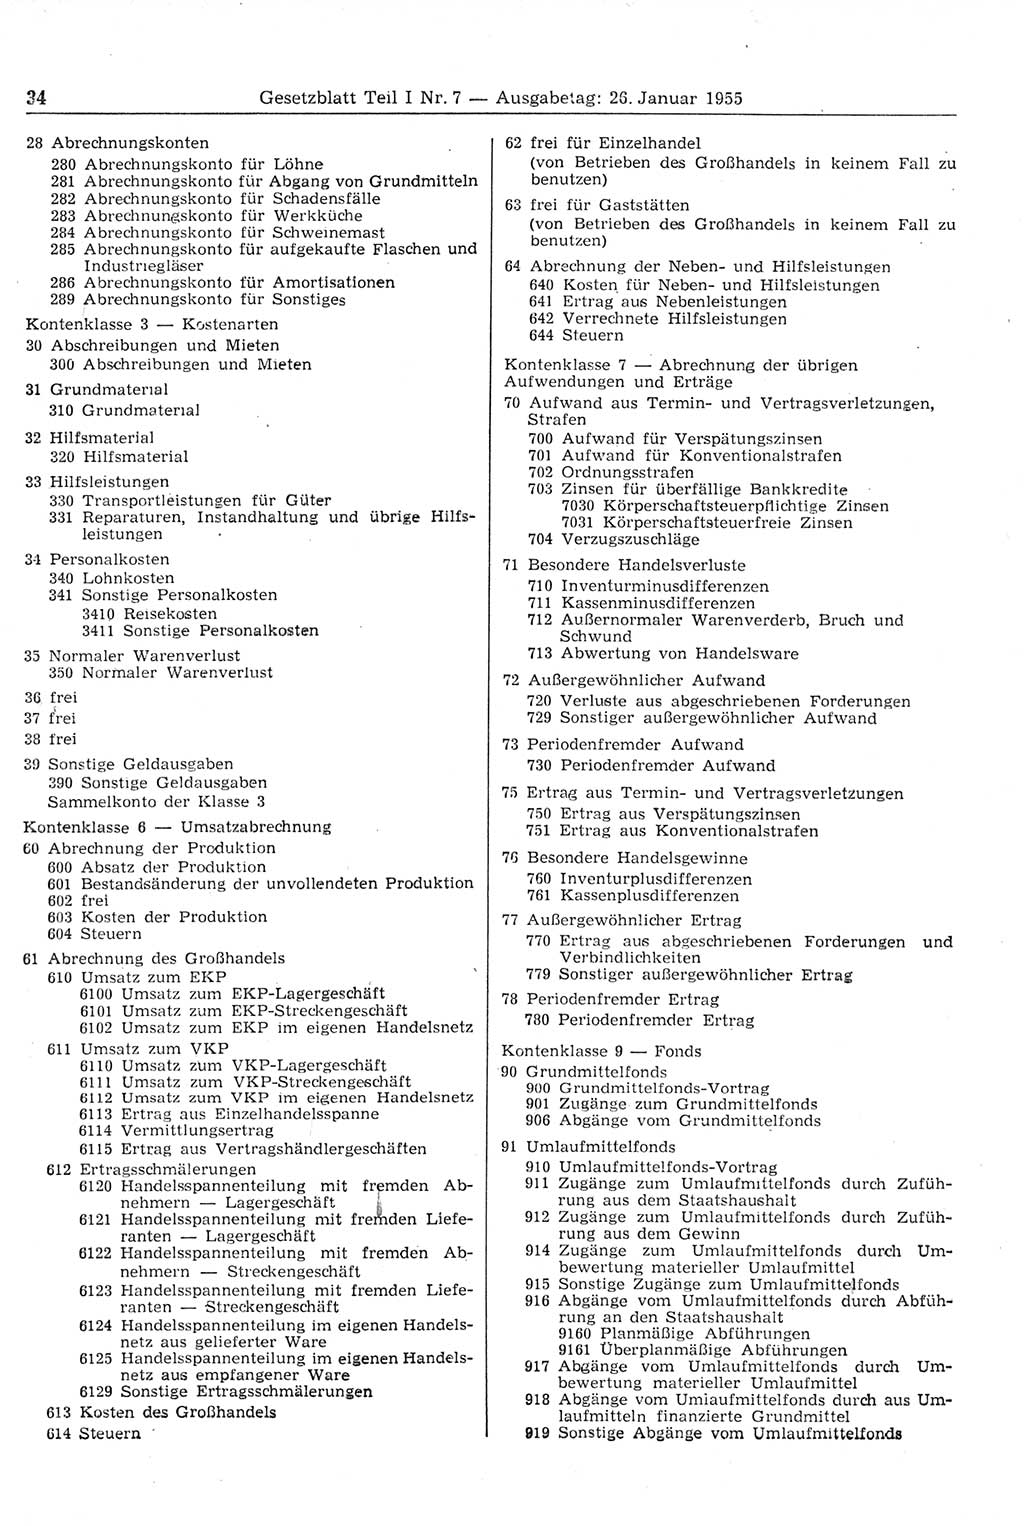 Gesetzblatt (GBl.) der Deutschen Demokratischen Republik (DDR) Teil Ⅰ 1955, Seite 34 (GBl. DDR Ⅰ 1955, S. 34)